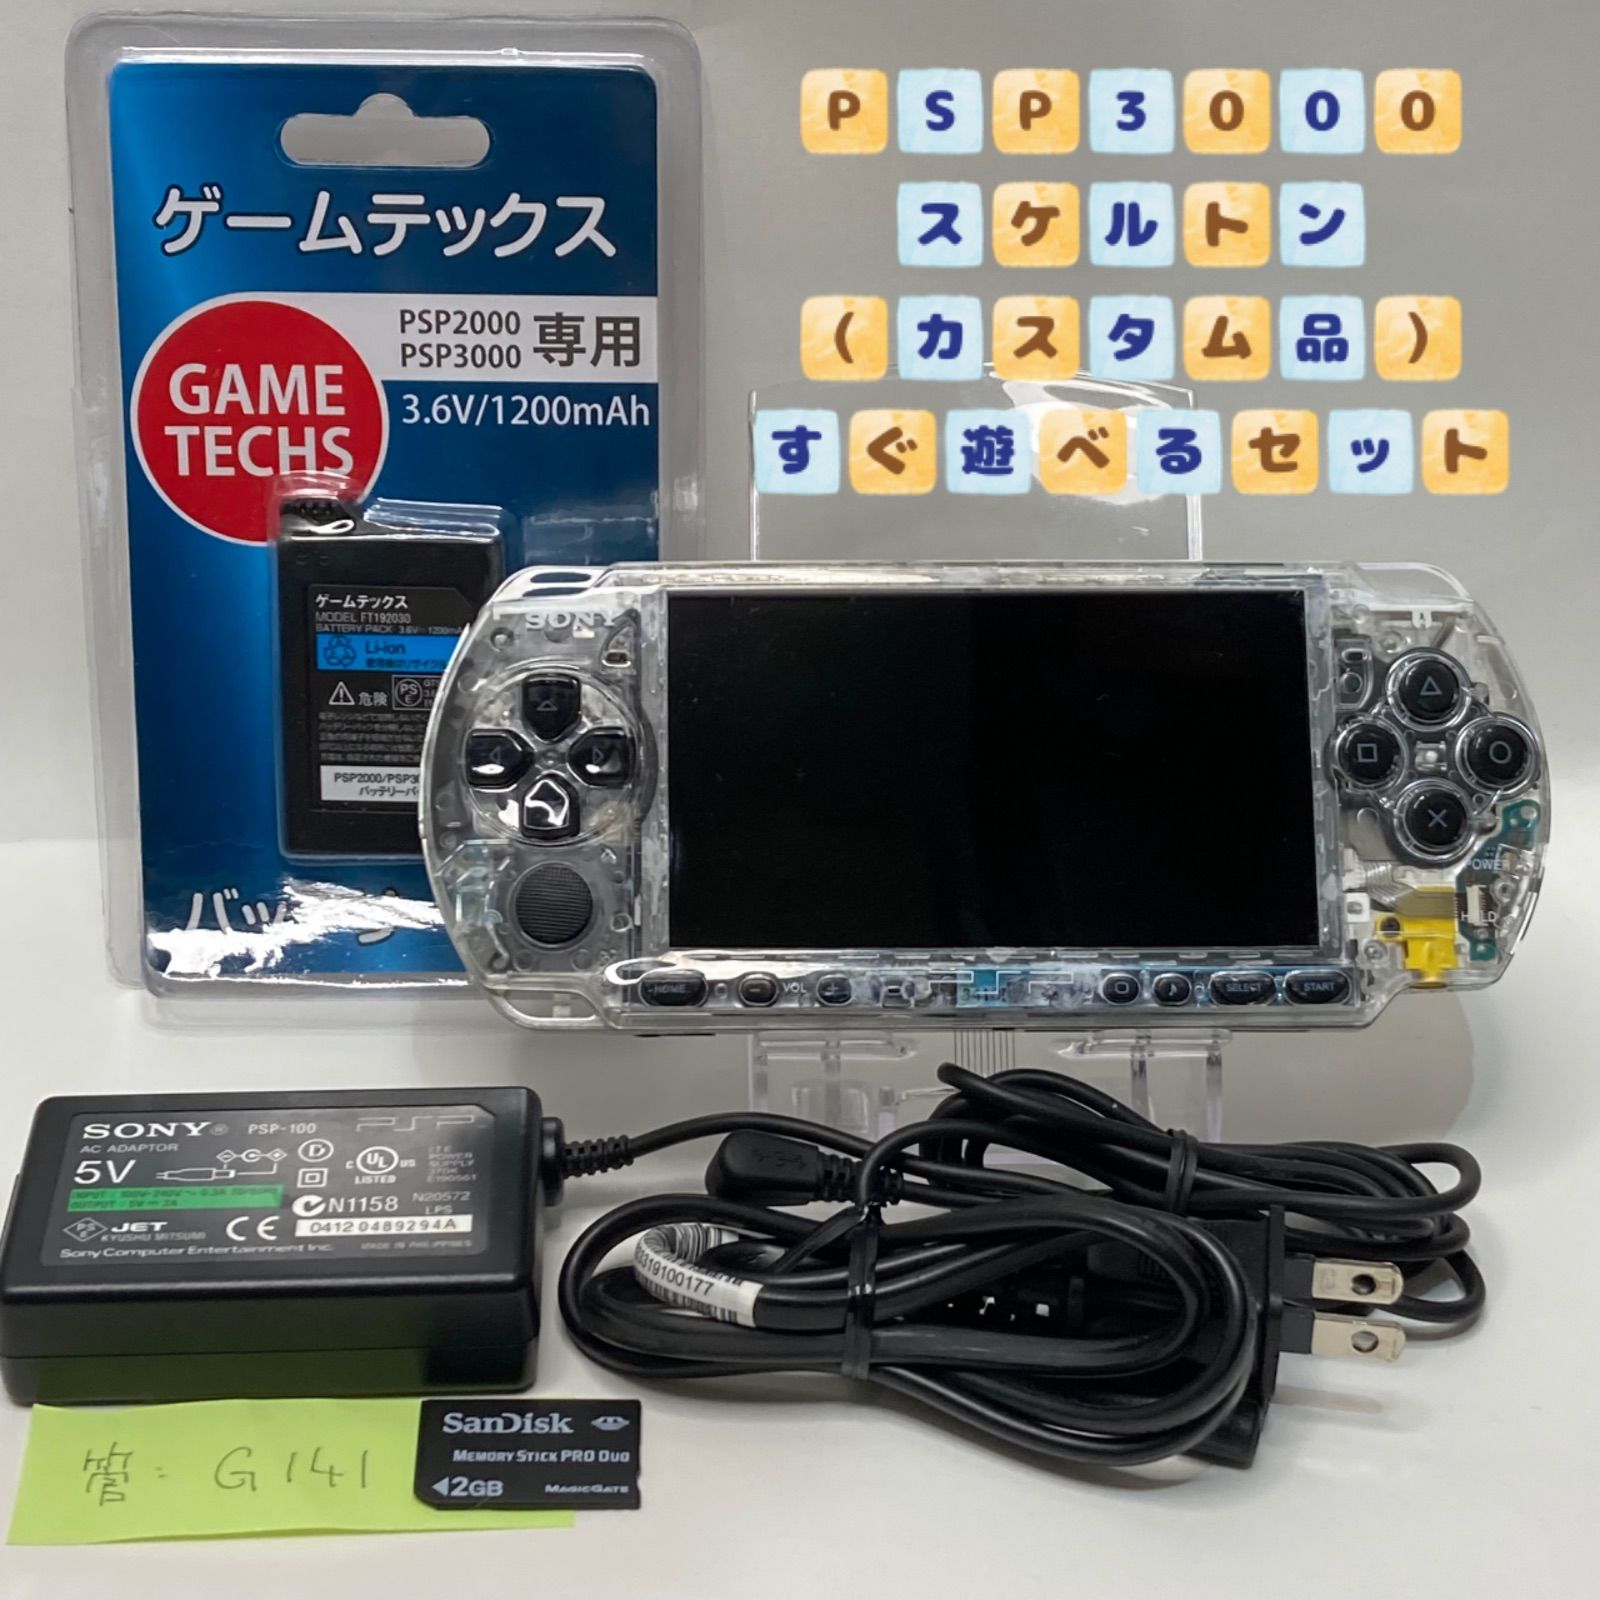 【美品】PSP 3000 すぐ遊べるセット(ブルー)